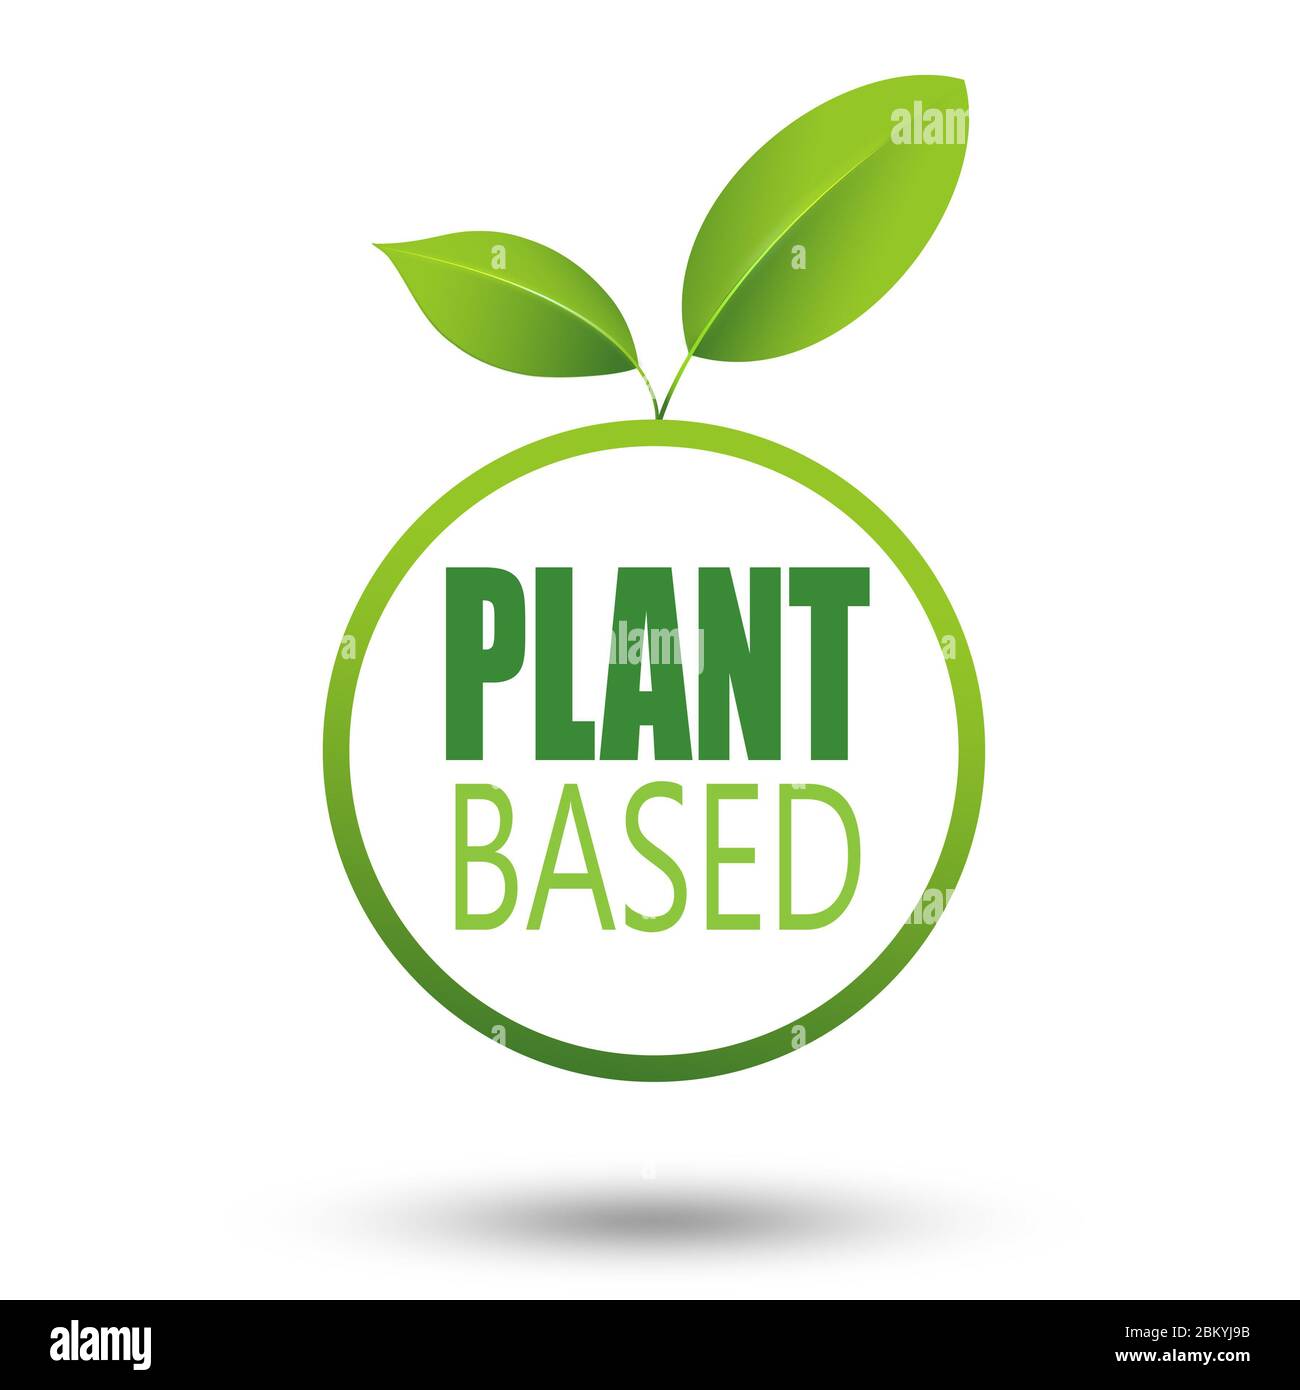 Plant based badge eco icon. vegetarian symbol logo leaf plant sign,illustration Stock Photo